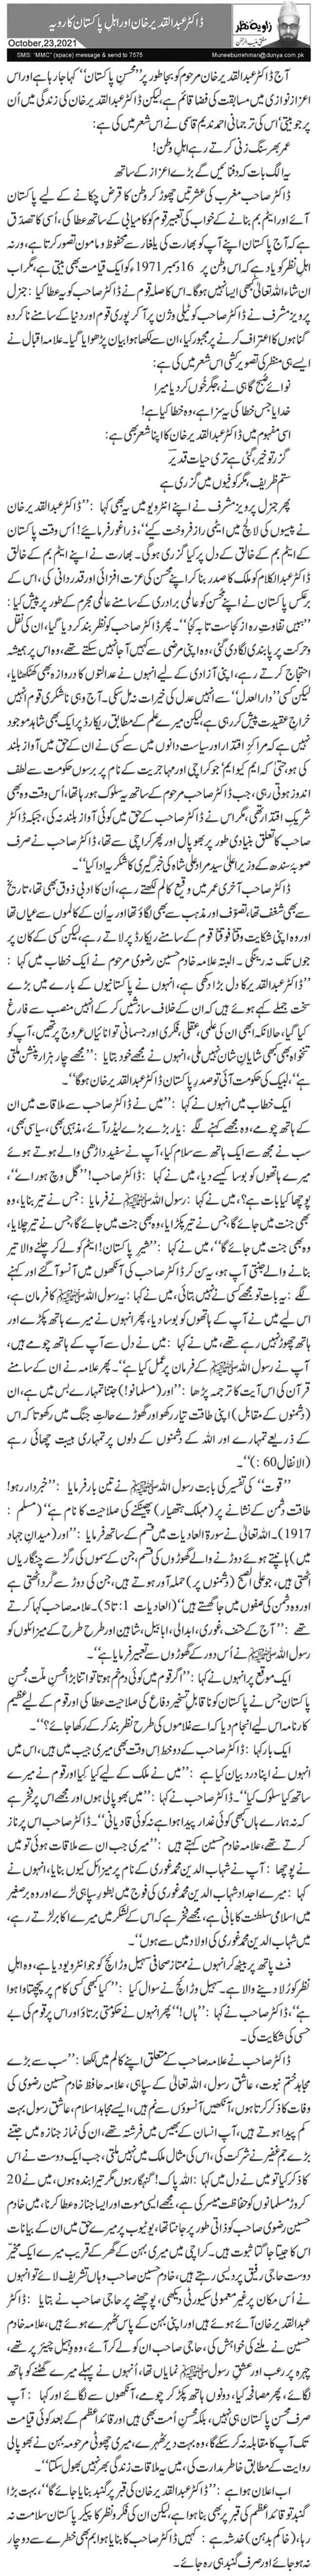 ڈاکٹر عبدالقدیر خان اور اہلِ پاکستان کا رویہ   